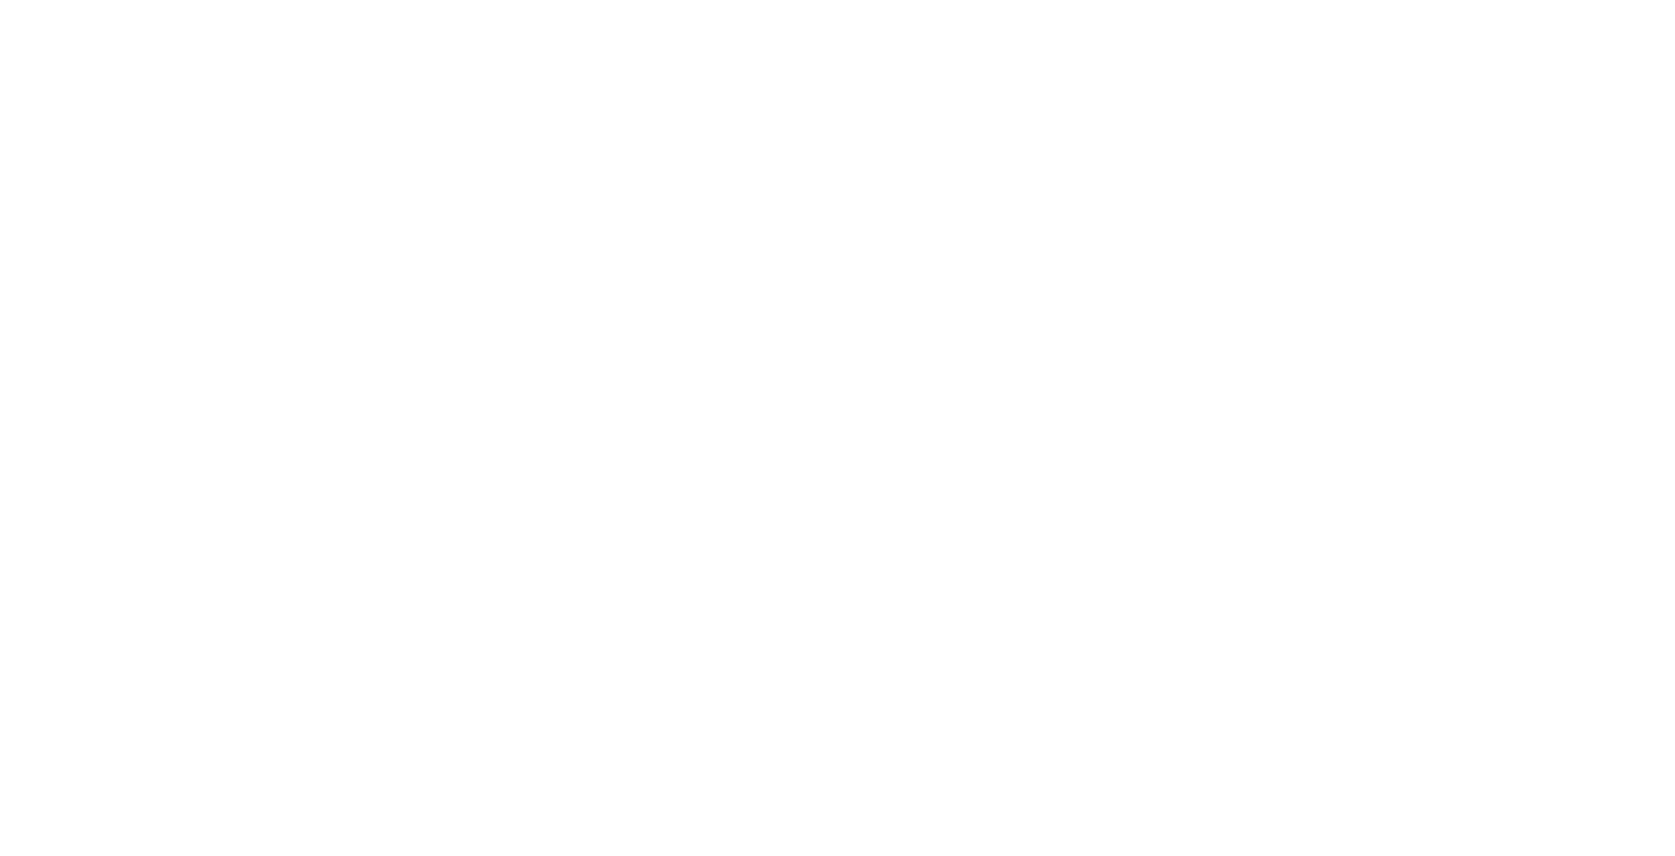 Кейс сервиса BRANDNATION - Фирменный стиль точки шаурмы. Брендинговое агентство BRANDNATION в Москве и Санкт-Петербурге. Услуги: разработка логотипа и фирменного стиля, дизайн упаковки, брендбук, ребрендинг, разработка сайта.